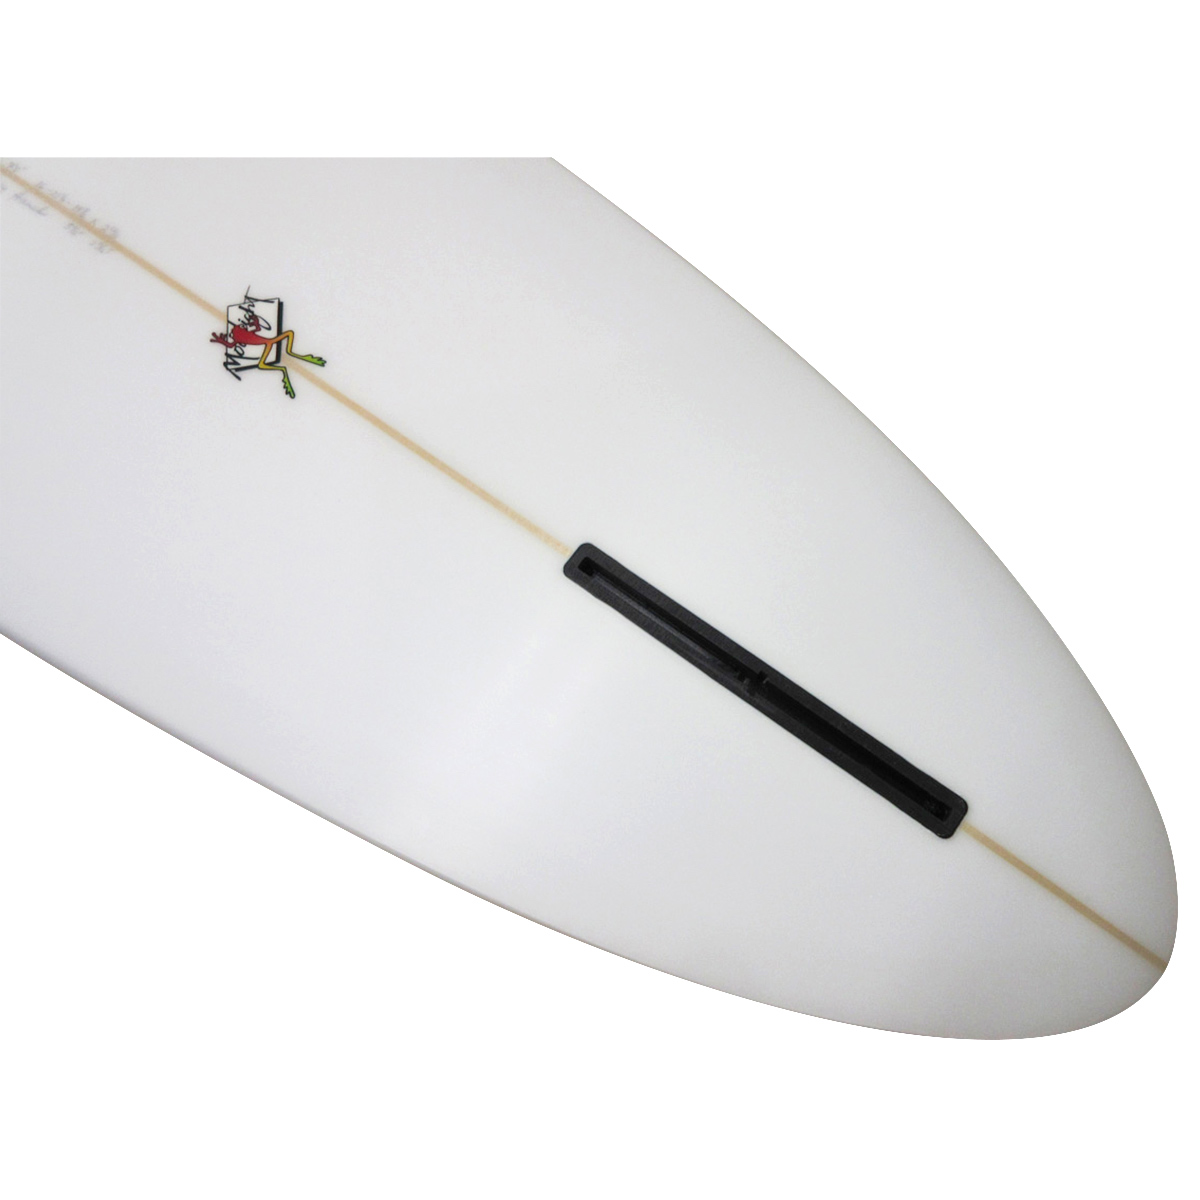 Gary Hanel Surfboards : Egg